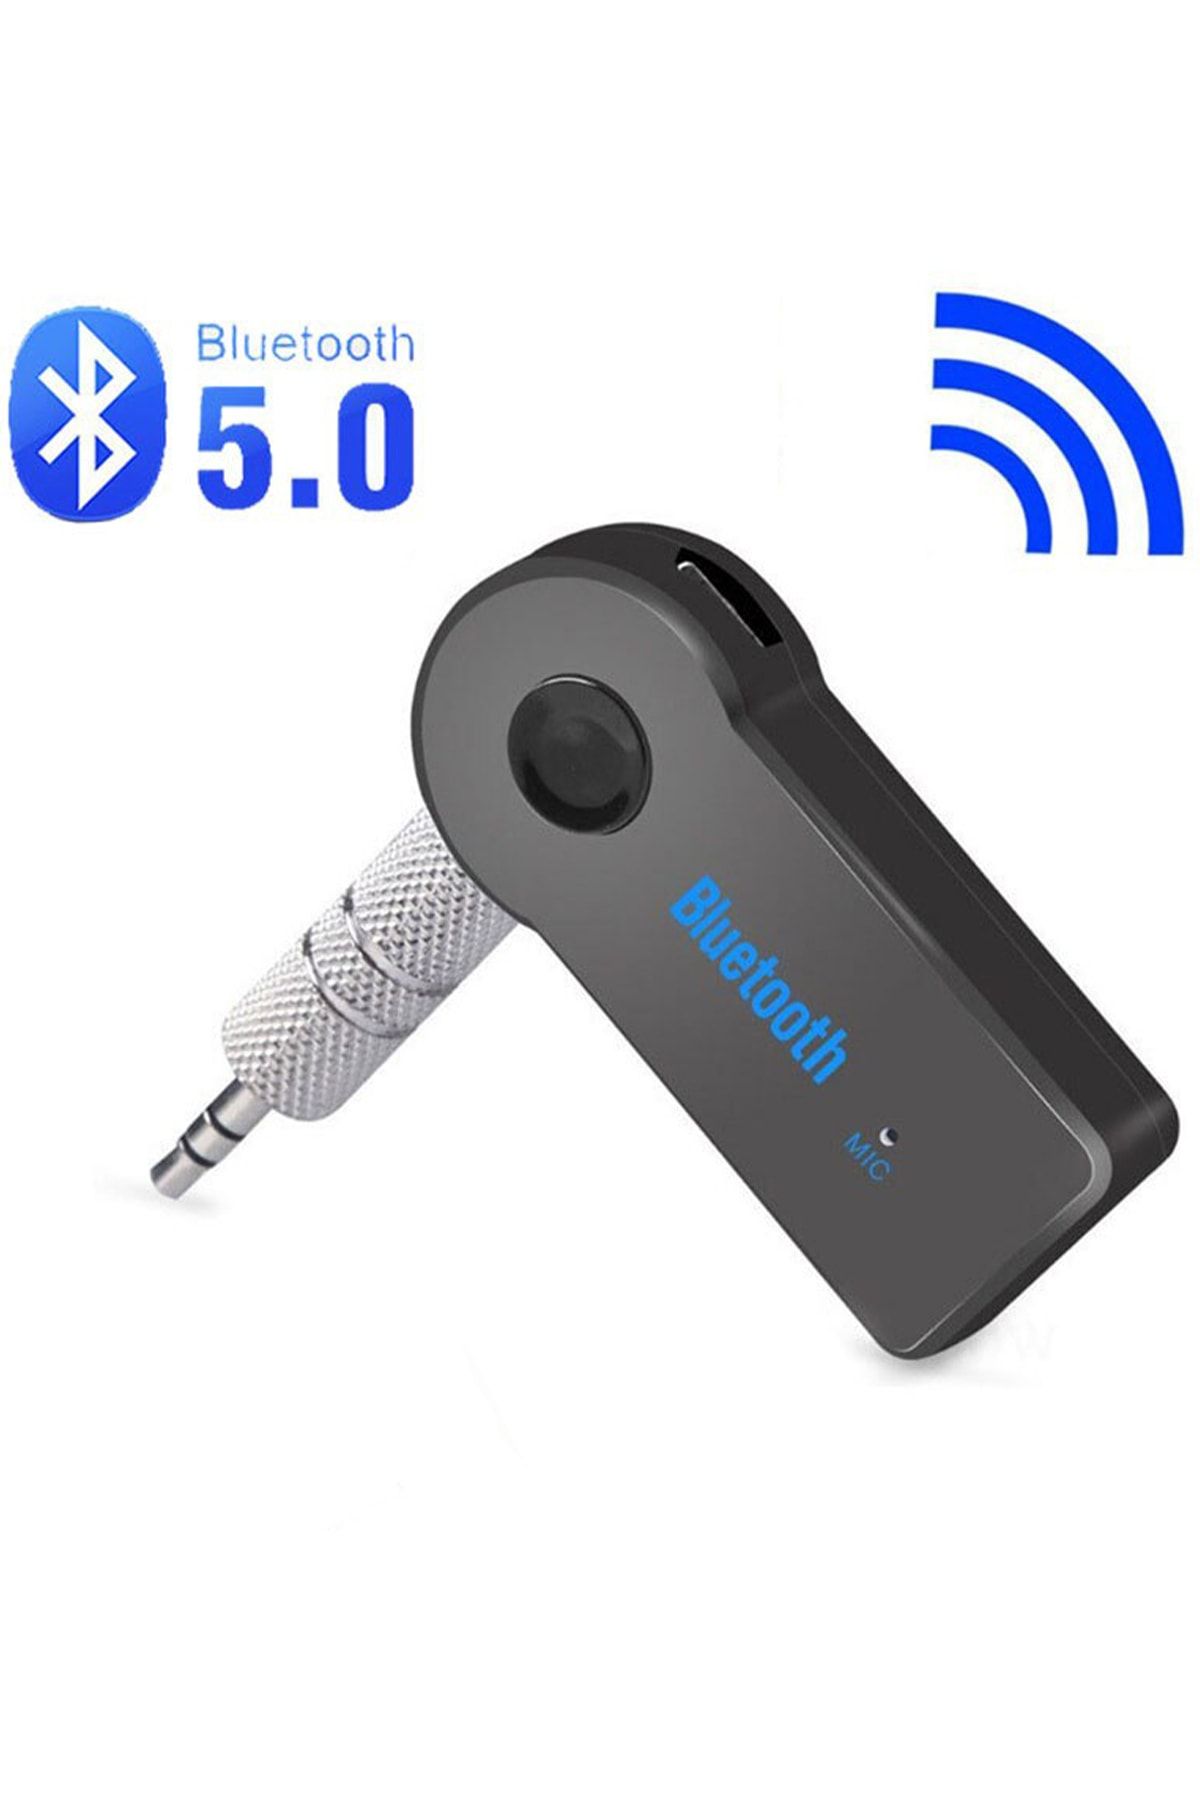 Etiget 2'in 1 Bluetooth Aux Kiti Bluetooth 5.0 Hd Ses Araç Kiti